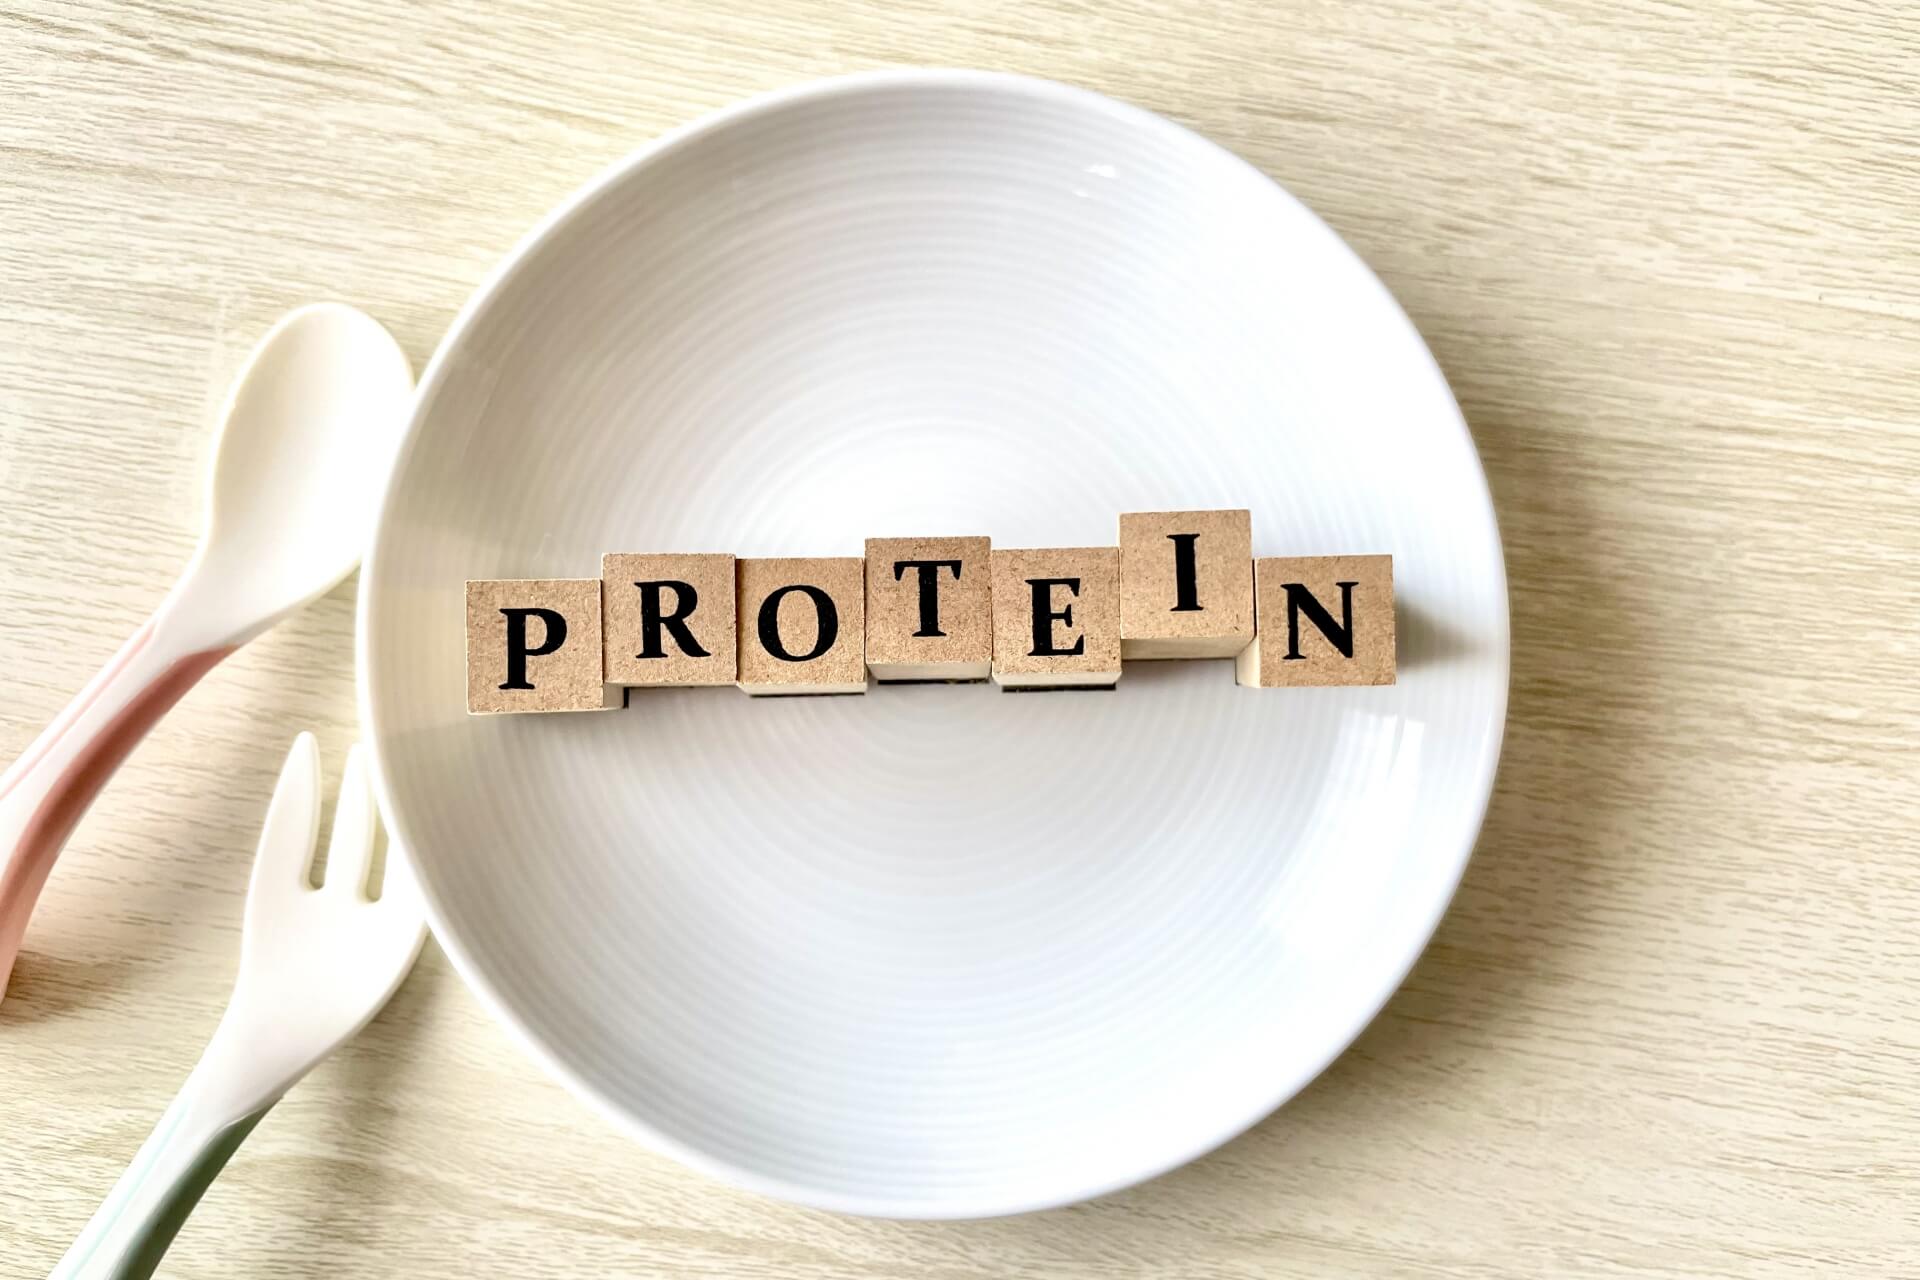 盤子裡的蛋白質